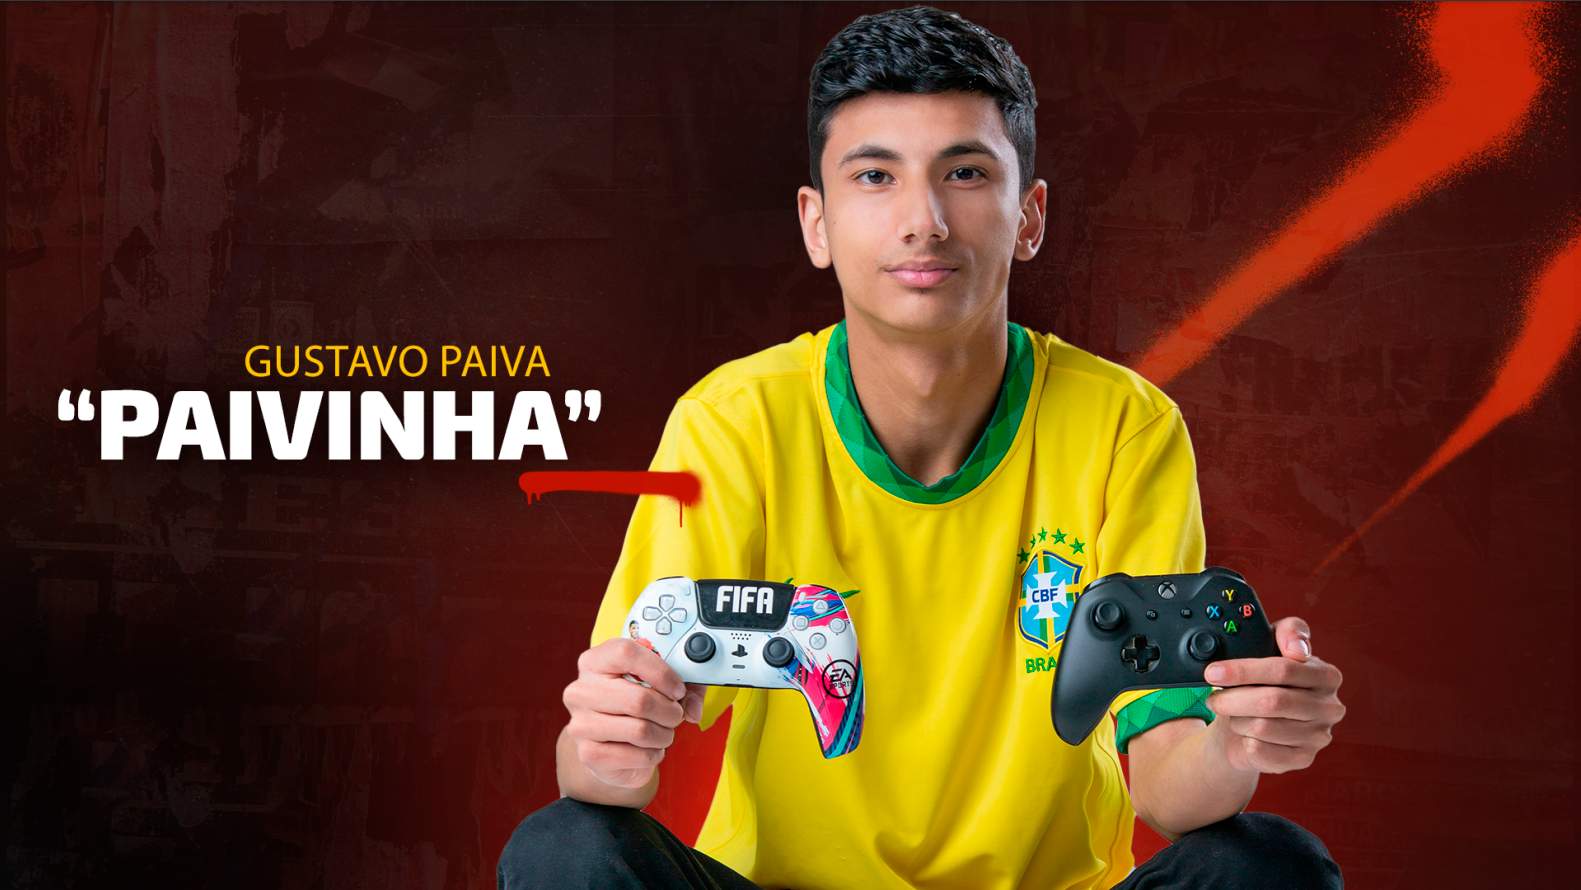 Conheça streamers de games brasileiros - 19/08/2022 - Especiais Folha -  Fotografia - Folha de S.Paulo